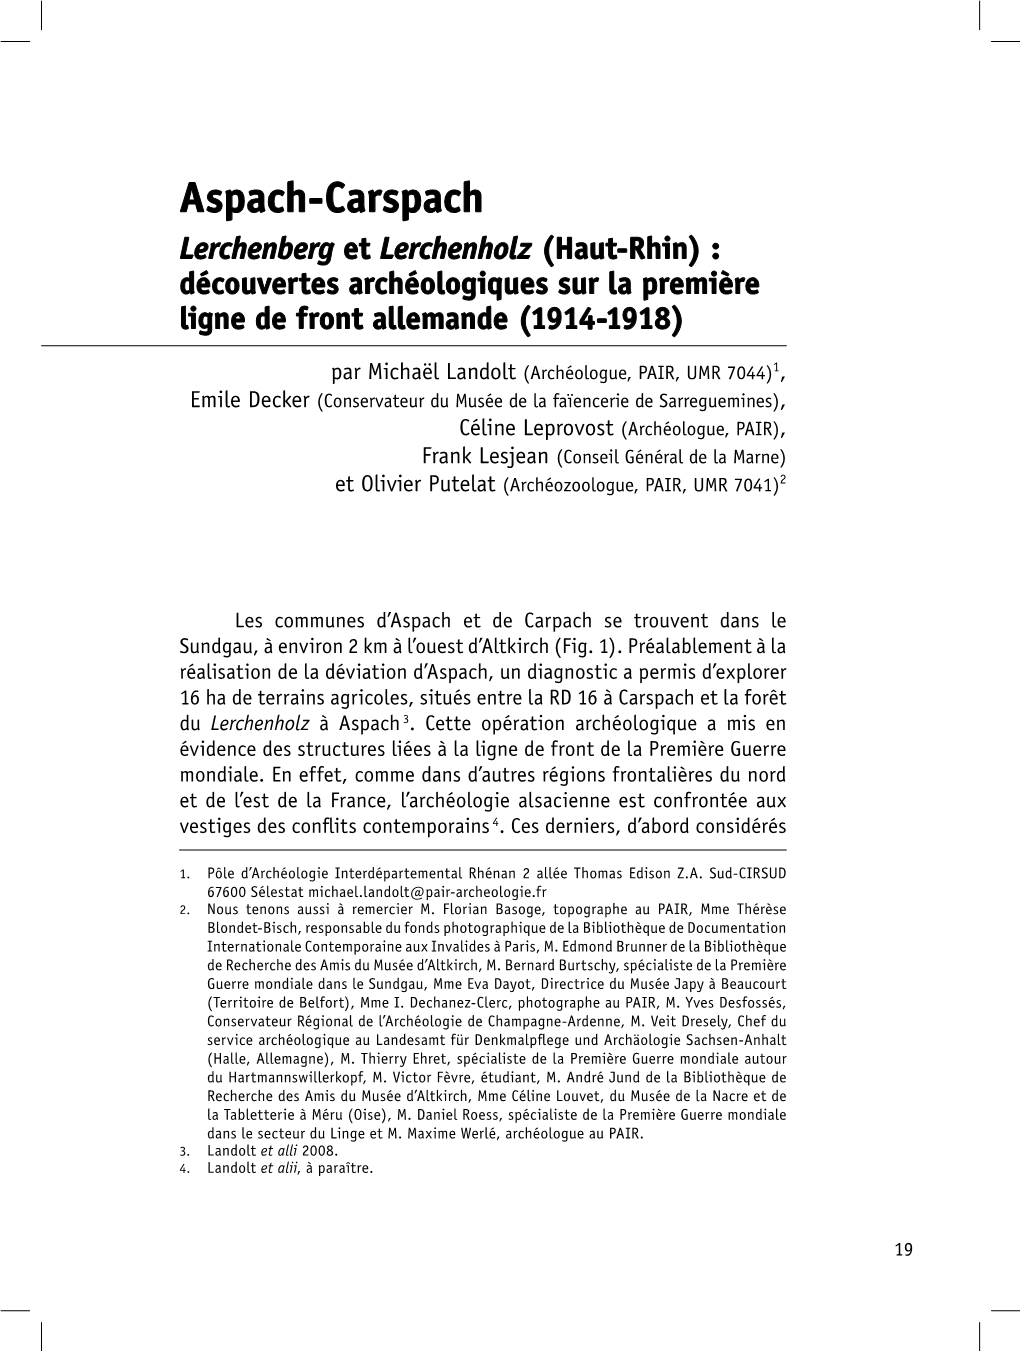 Aspach-Carspach Lerchenberg Et Lerchenholz (Haut-Rhin) : Découvertes Archéologiques Sur La Première Ligne De Front Allemande (1914-1918)